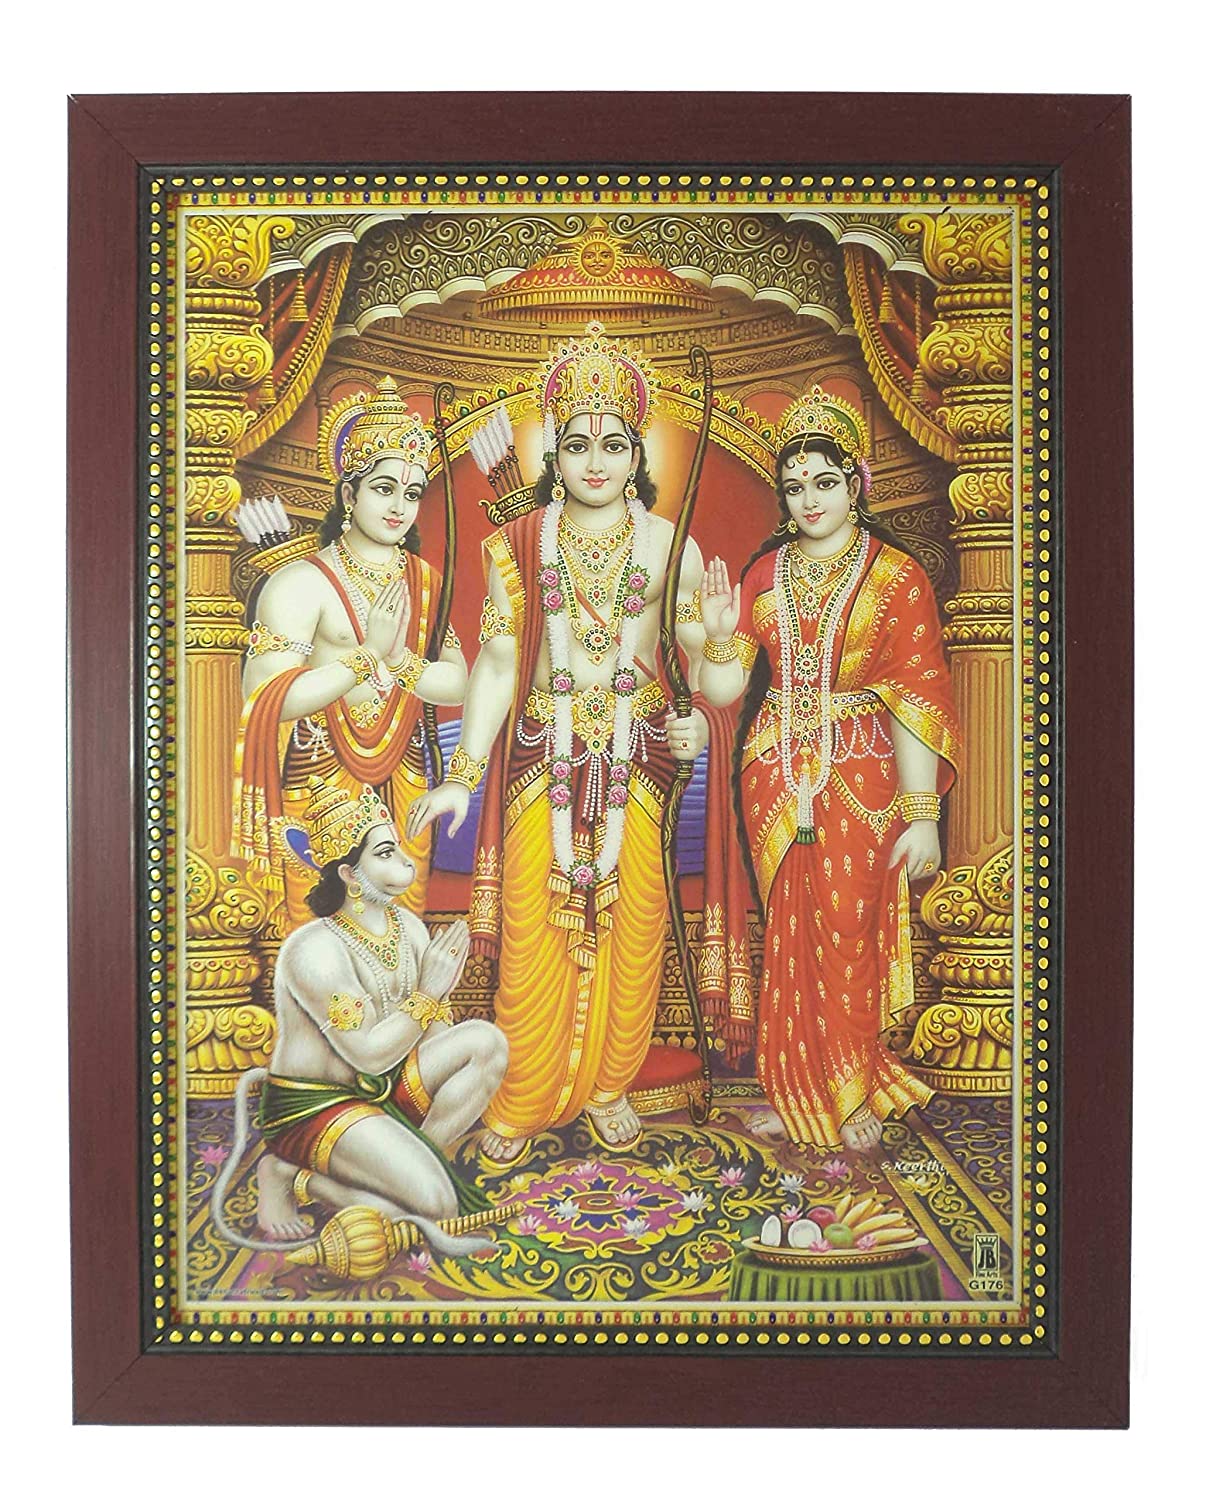 Buy Lord Ram Laxman Sita Hanuman Photo Frame 32.5 cm x 26.5 cm x